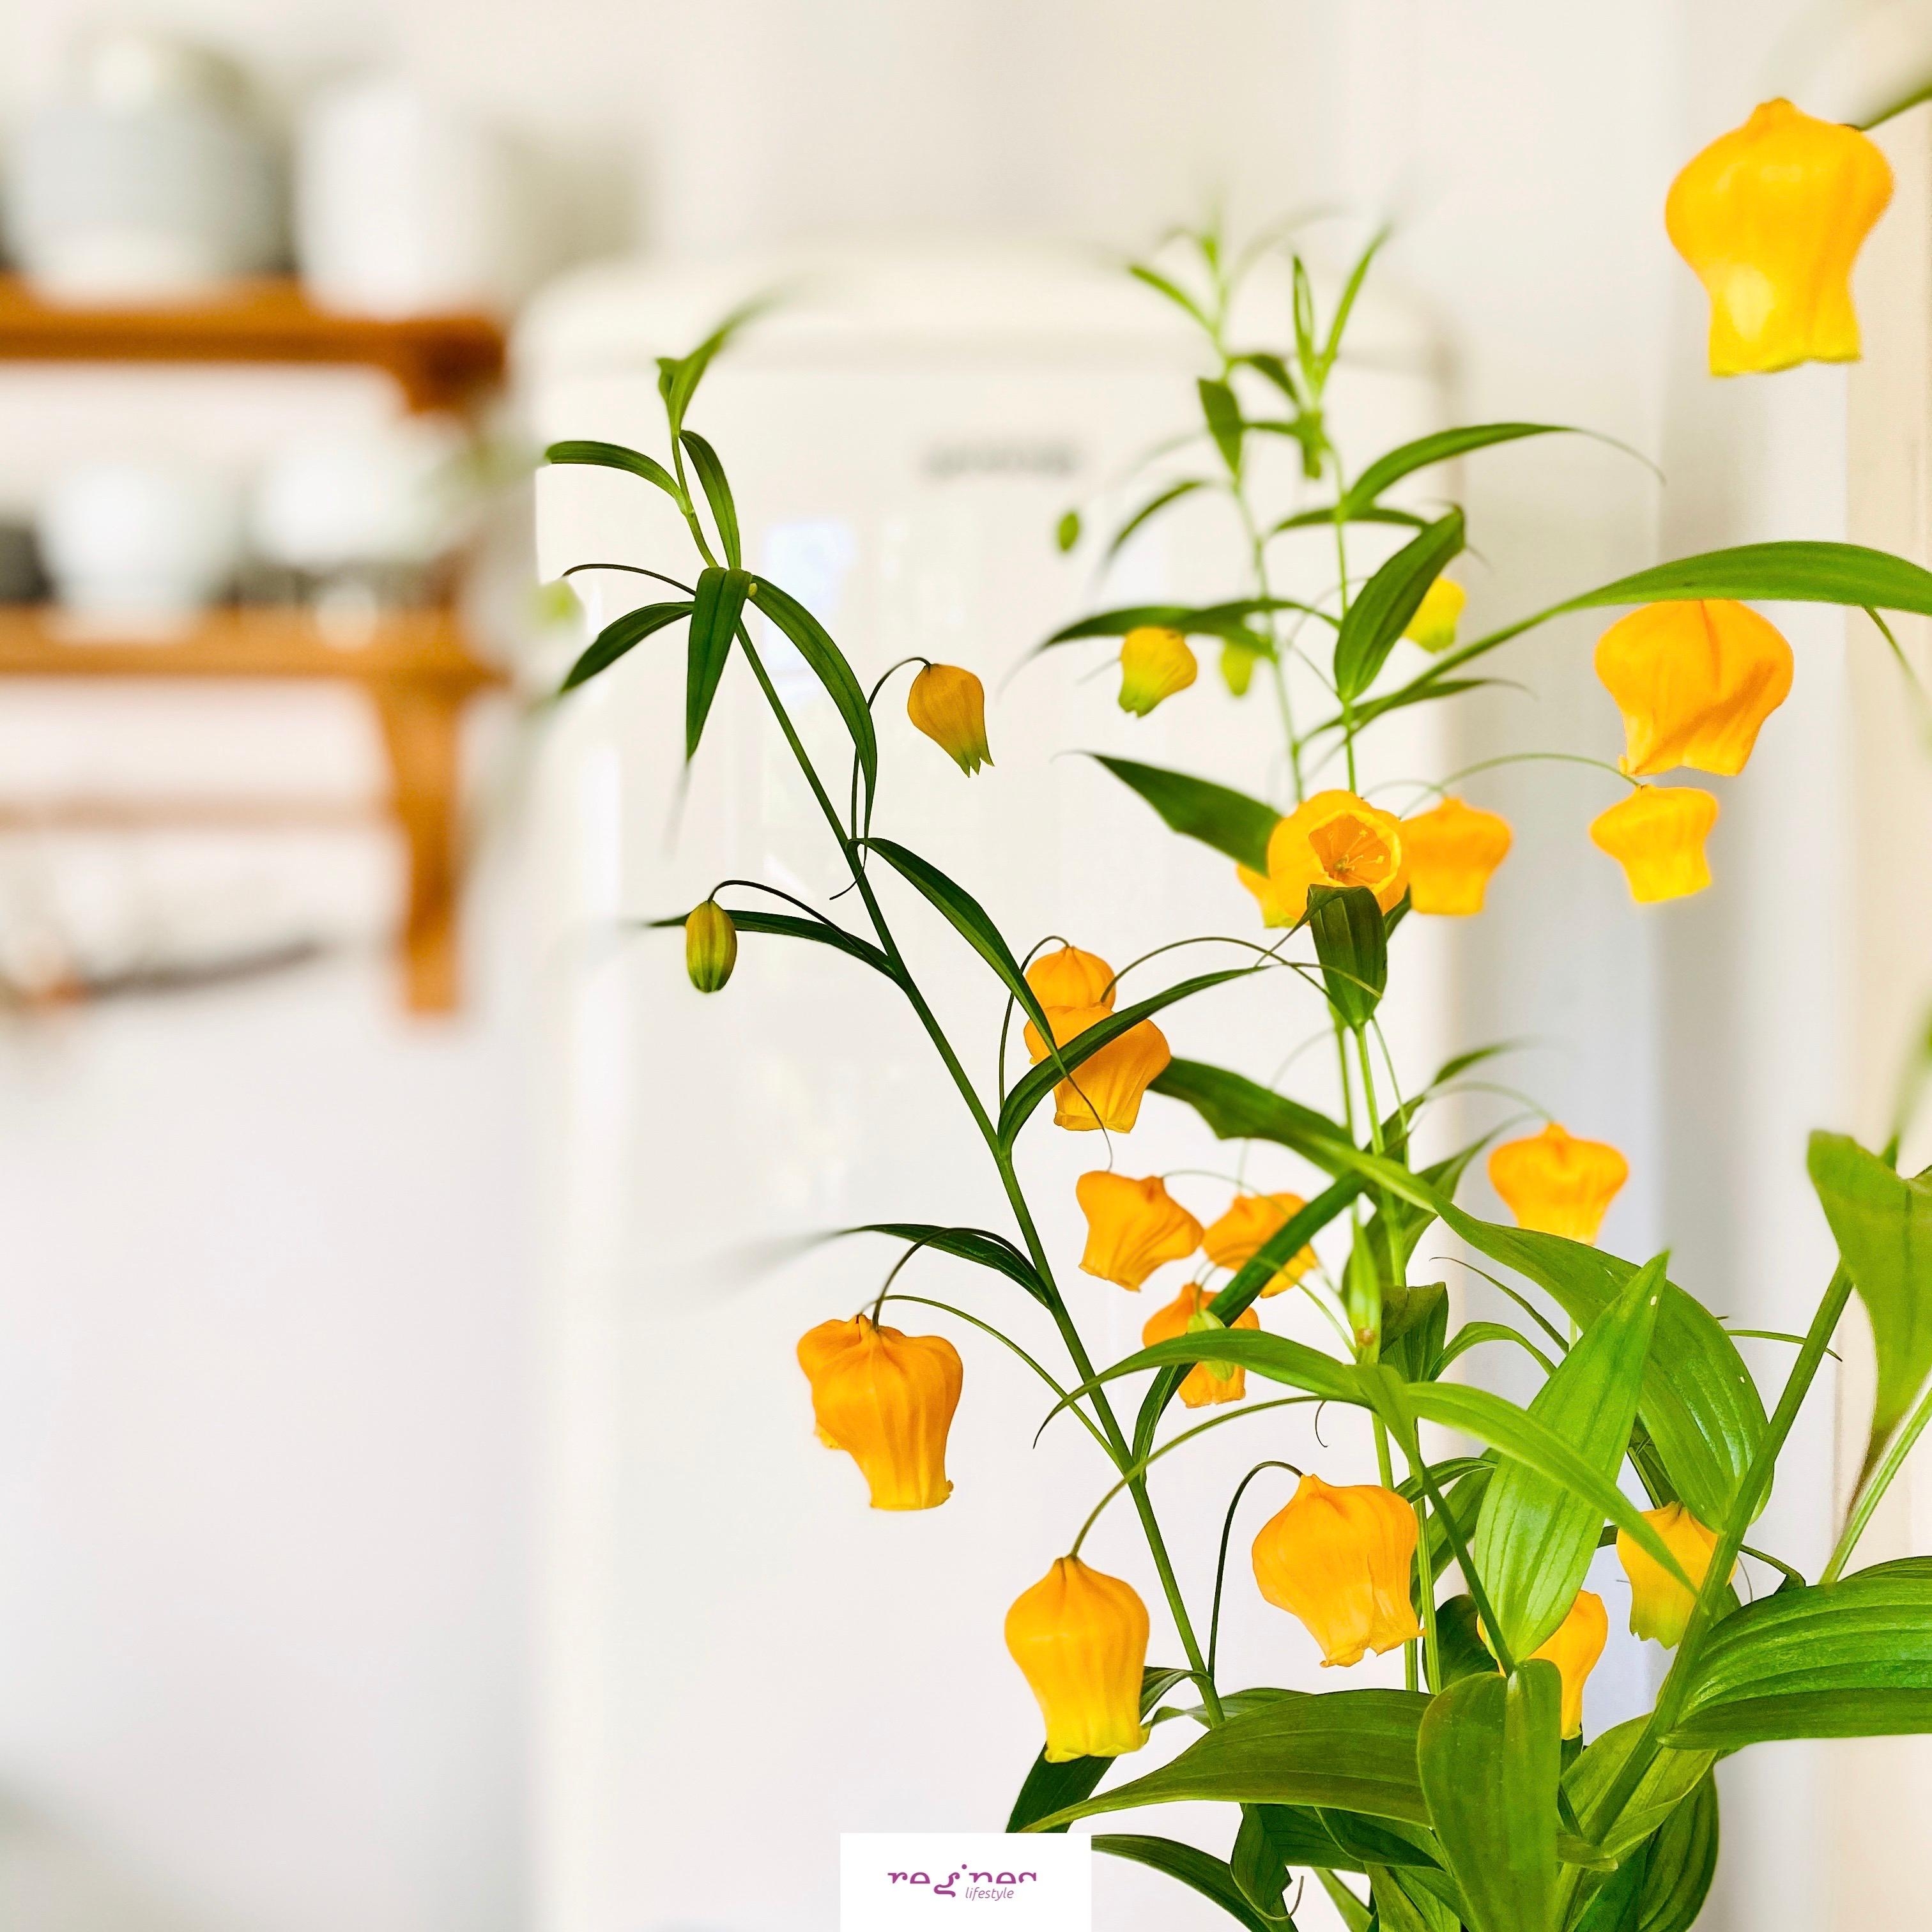 Ein kleiner Blumengruß zum Dienstag 💛
#laternenlilie #freshflowers #blumen #lilien #kücheninspo #detailaufnahme #blume